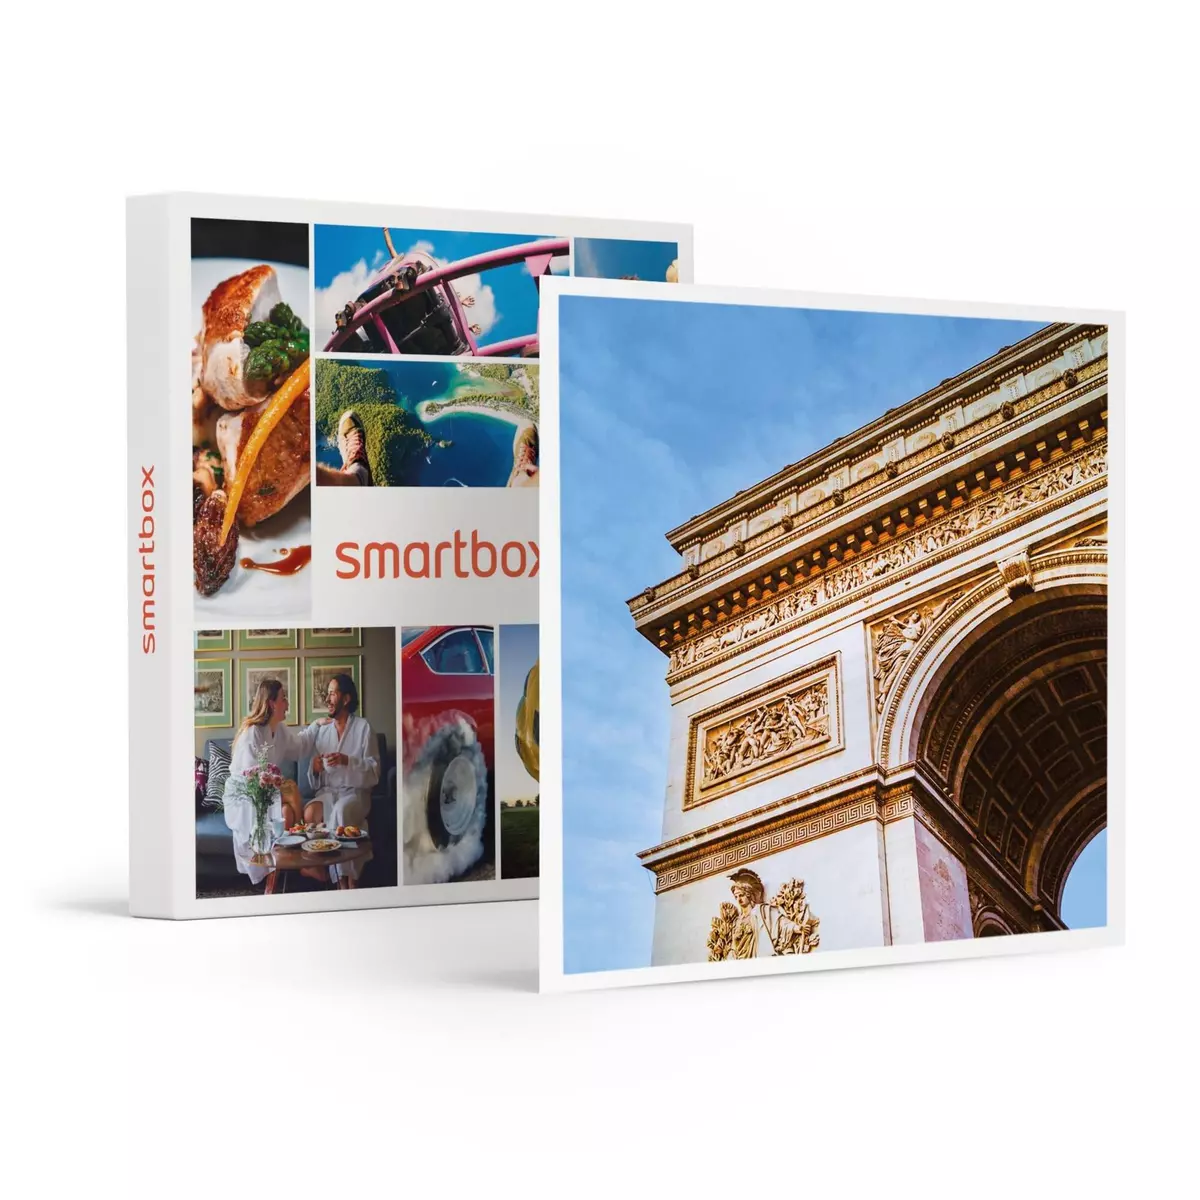 Smartbox Activité ludique en ligne sur les grandes figures parisiennes pour 10 personnes - Coffret Cadeau Sport & Aventure